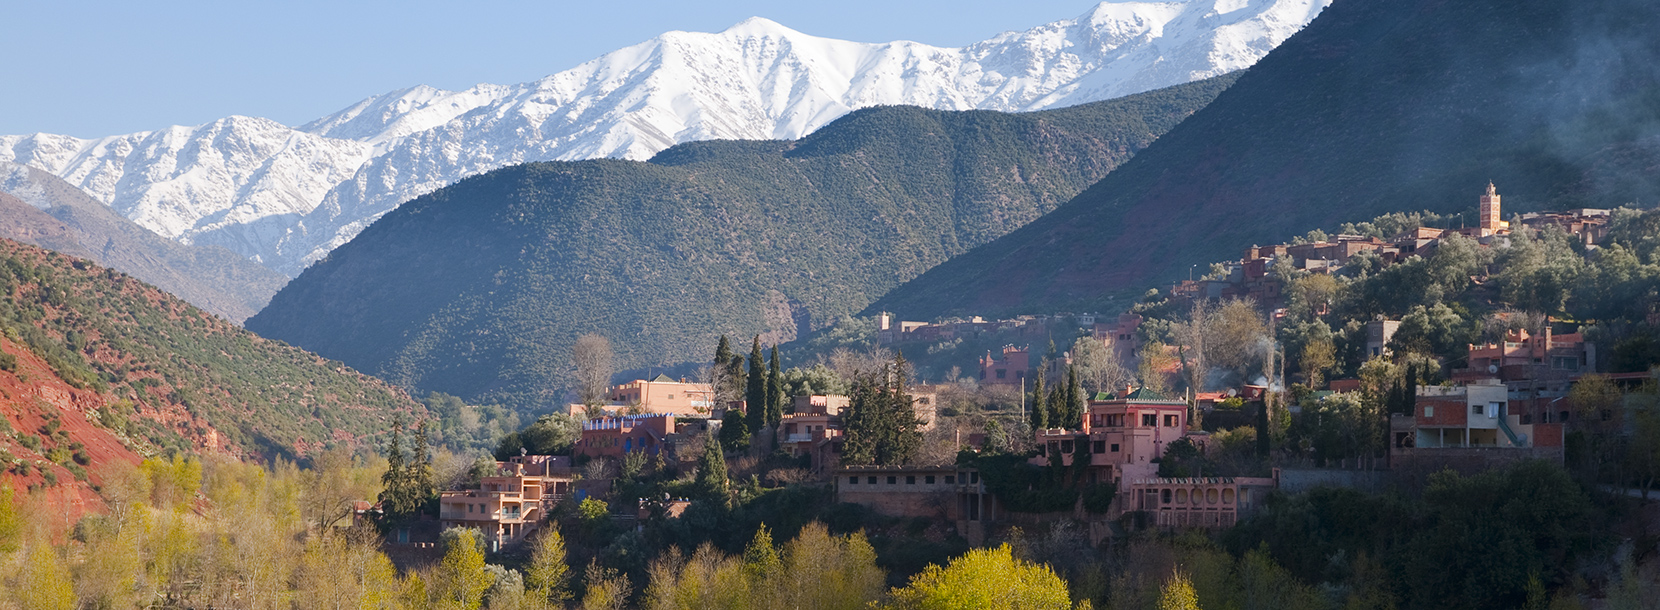 Marrakesz widziany z górskich szczytów